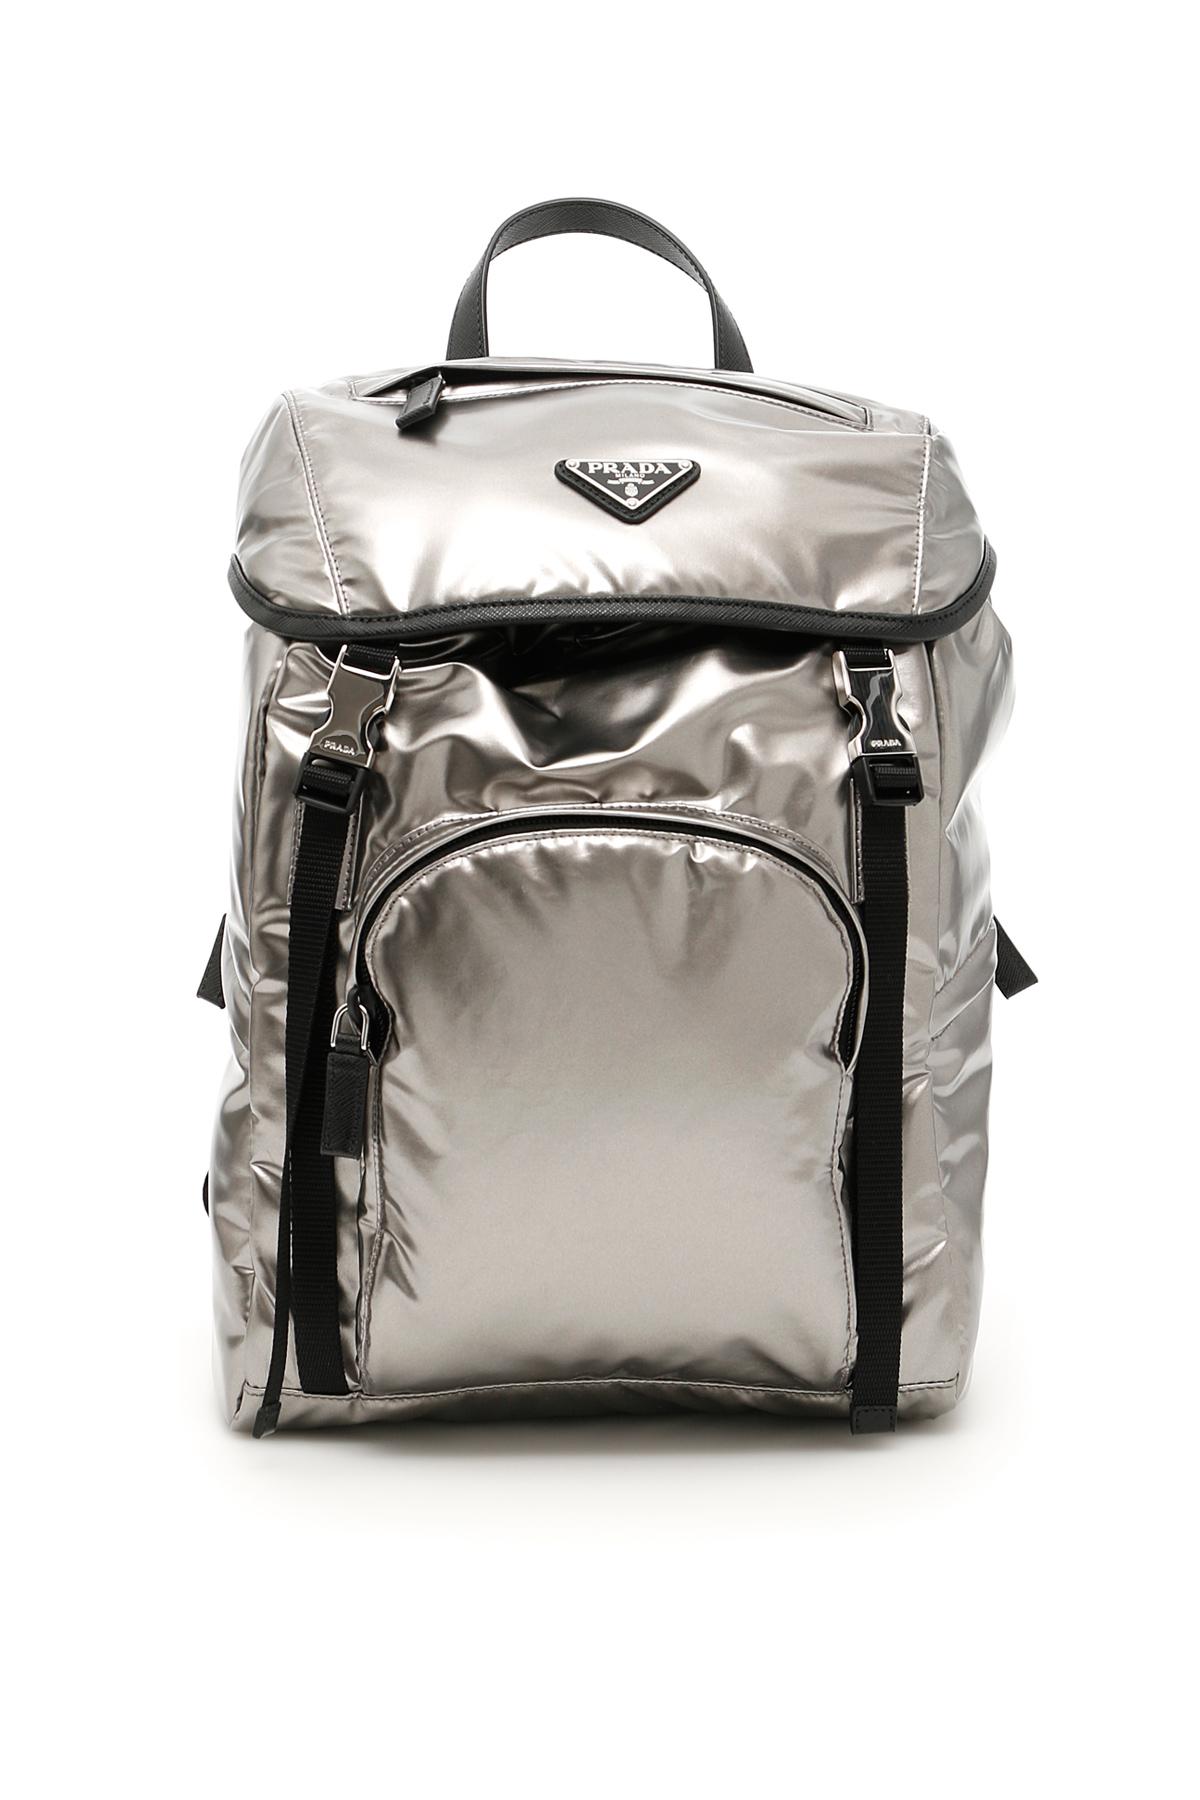 Prada Synthetic Metallic Nylon Backpack 